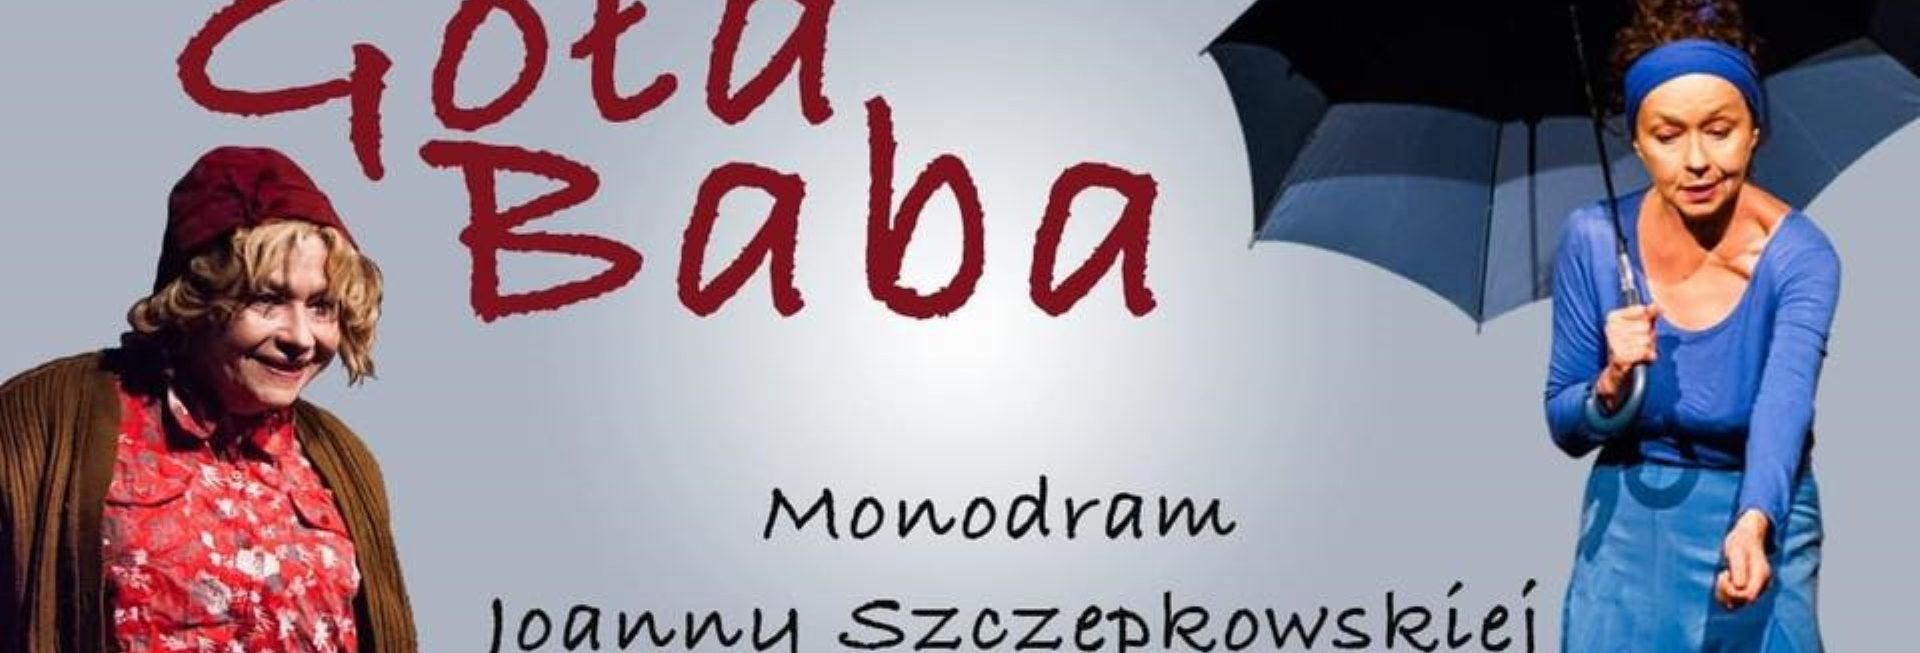 Plakat graficzny zapraszający do Kętrzyna na spektakl komediowy GOŁA BABA. 